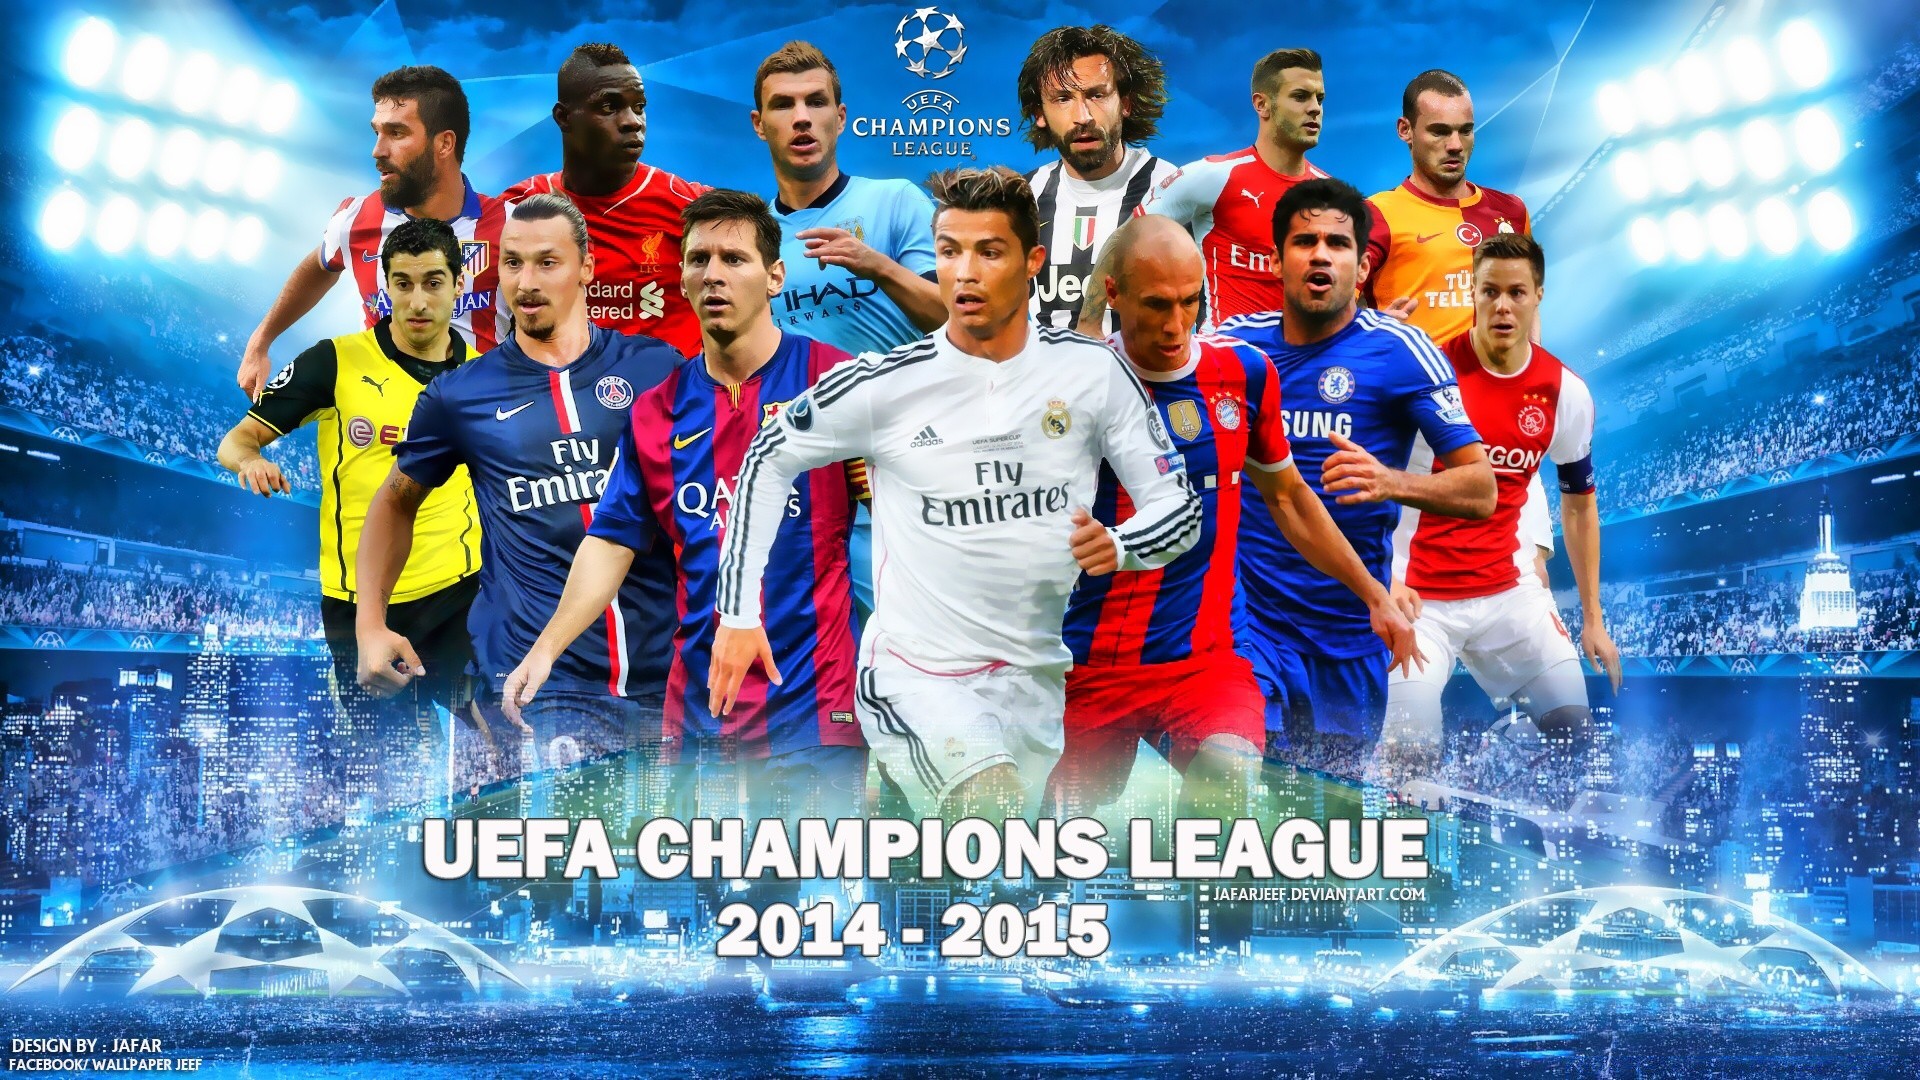 3 футбольная лига. Лига чемпионов. Футбольная обложка. Обложка футбольной группы. UEFA Champions League футбол.